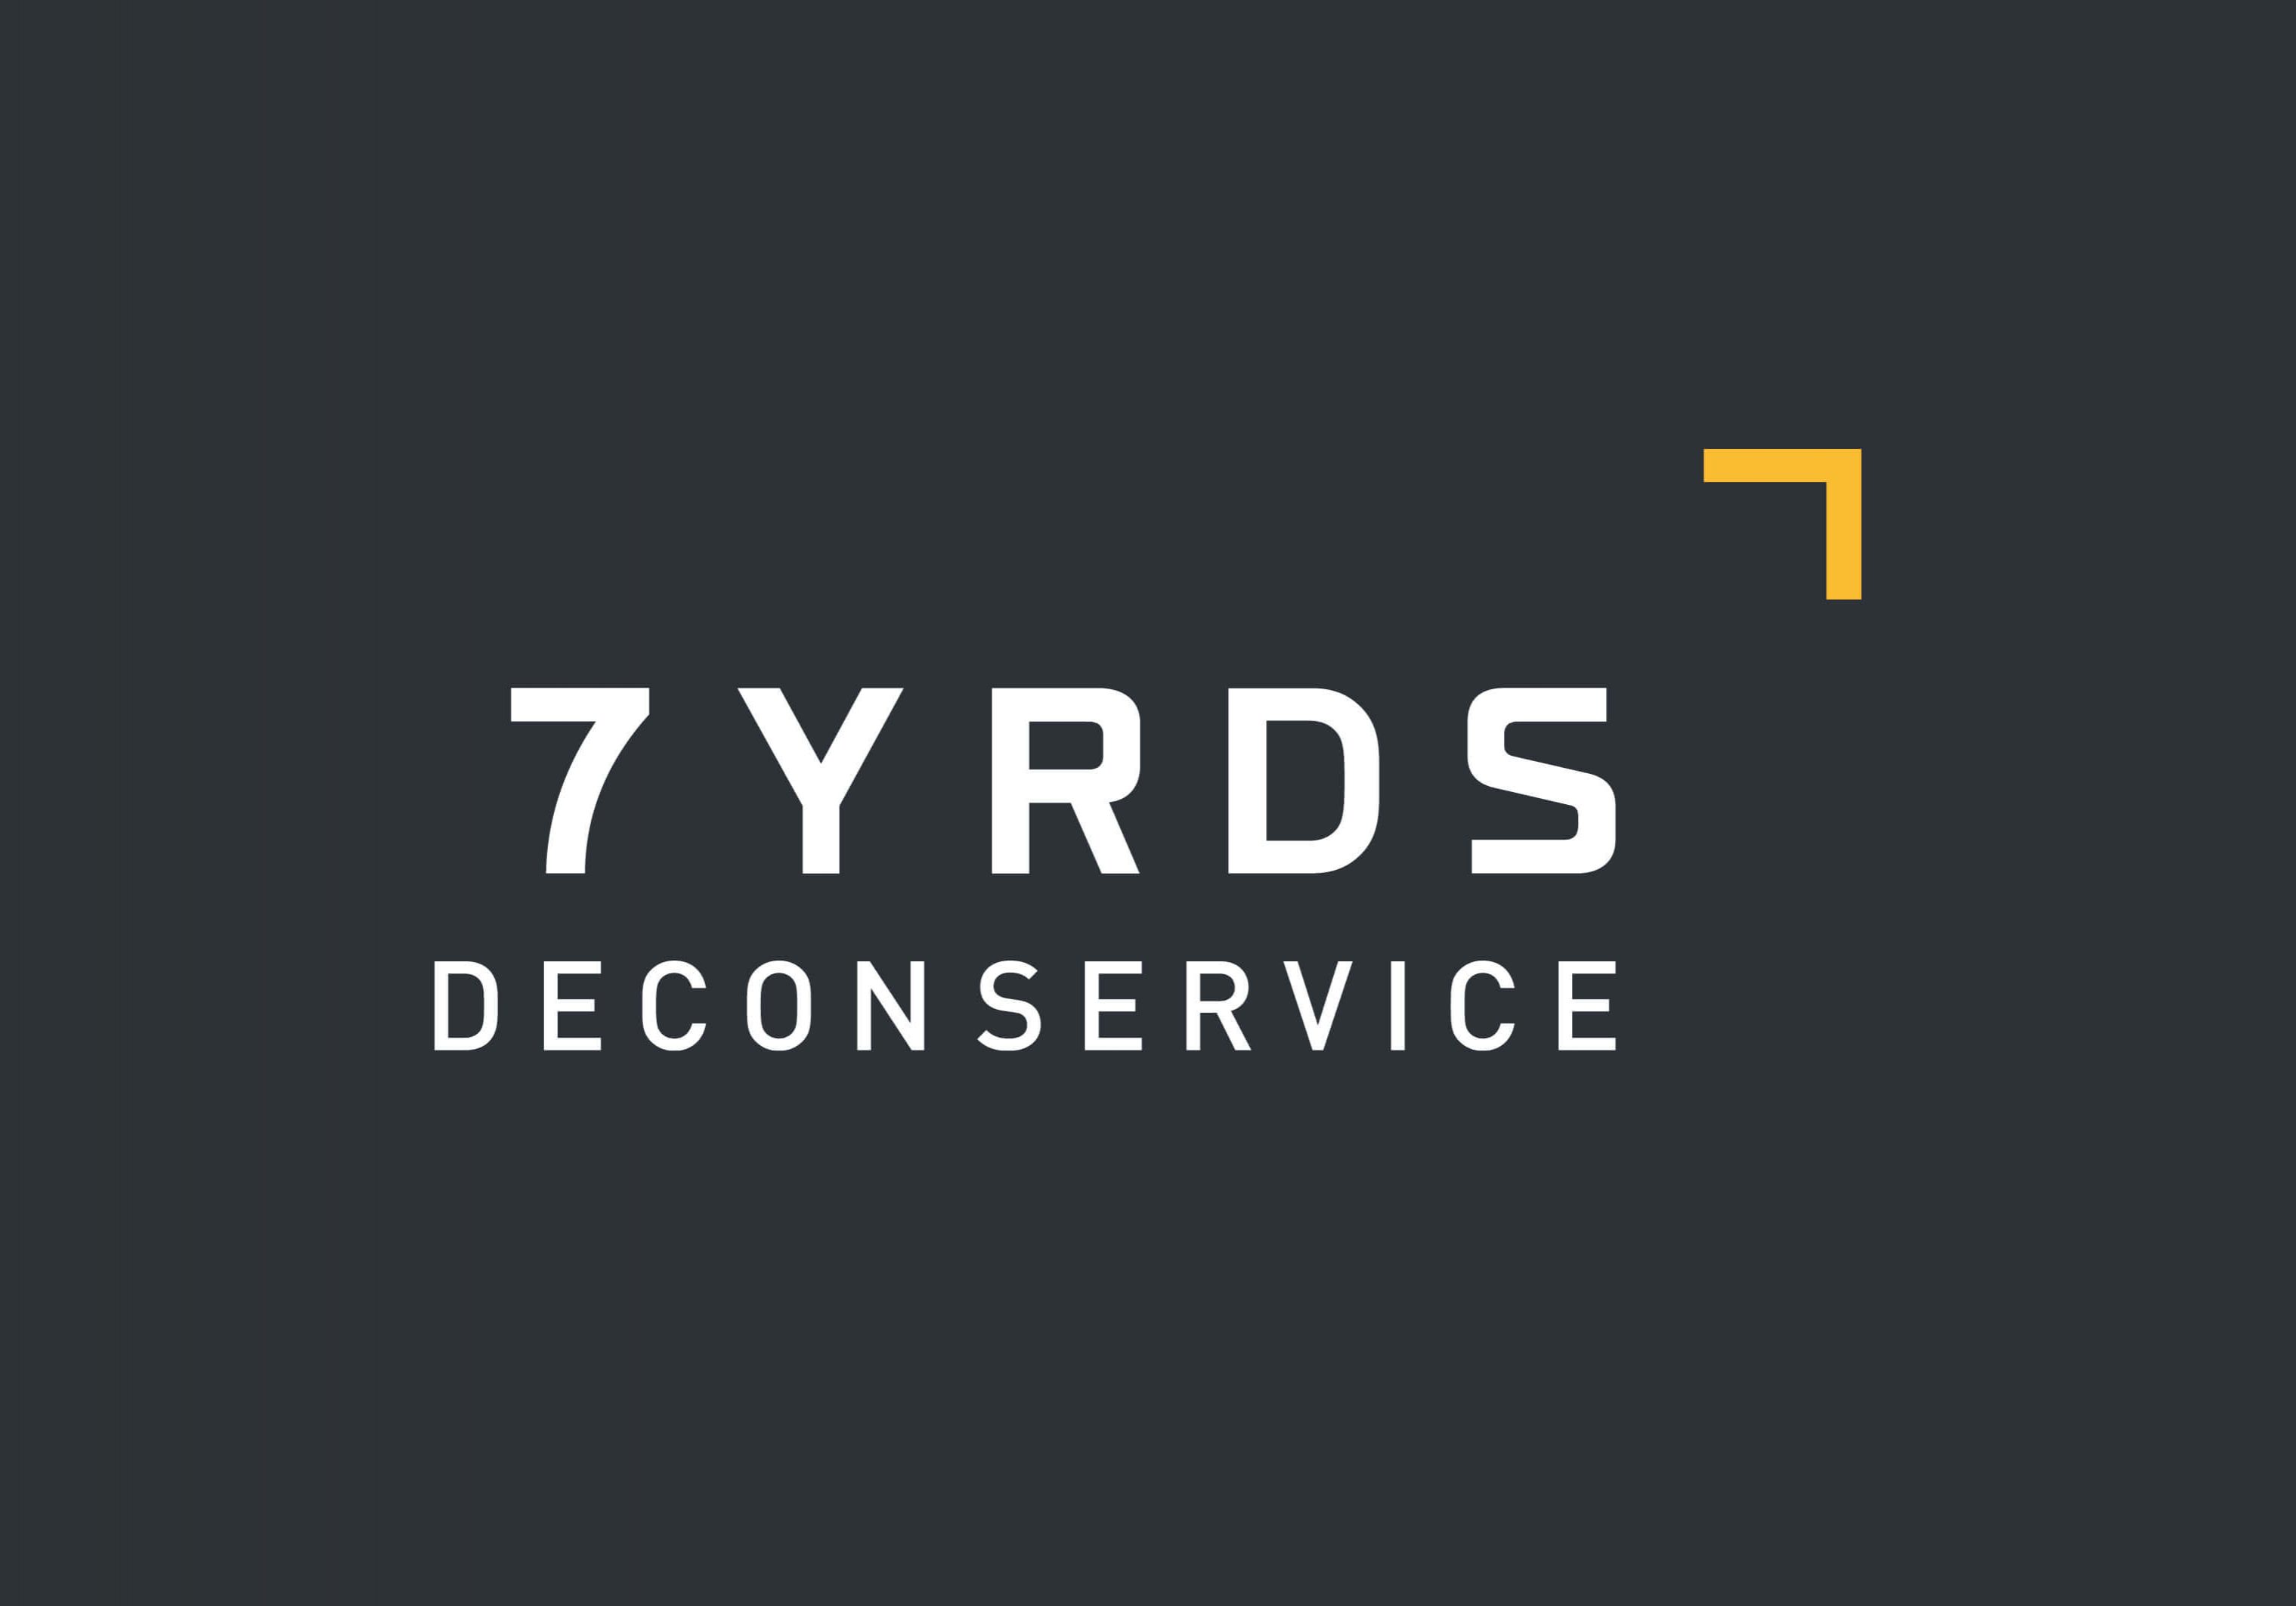 7yrds-deconservice-geschaeftsfelder-submarke